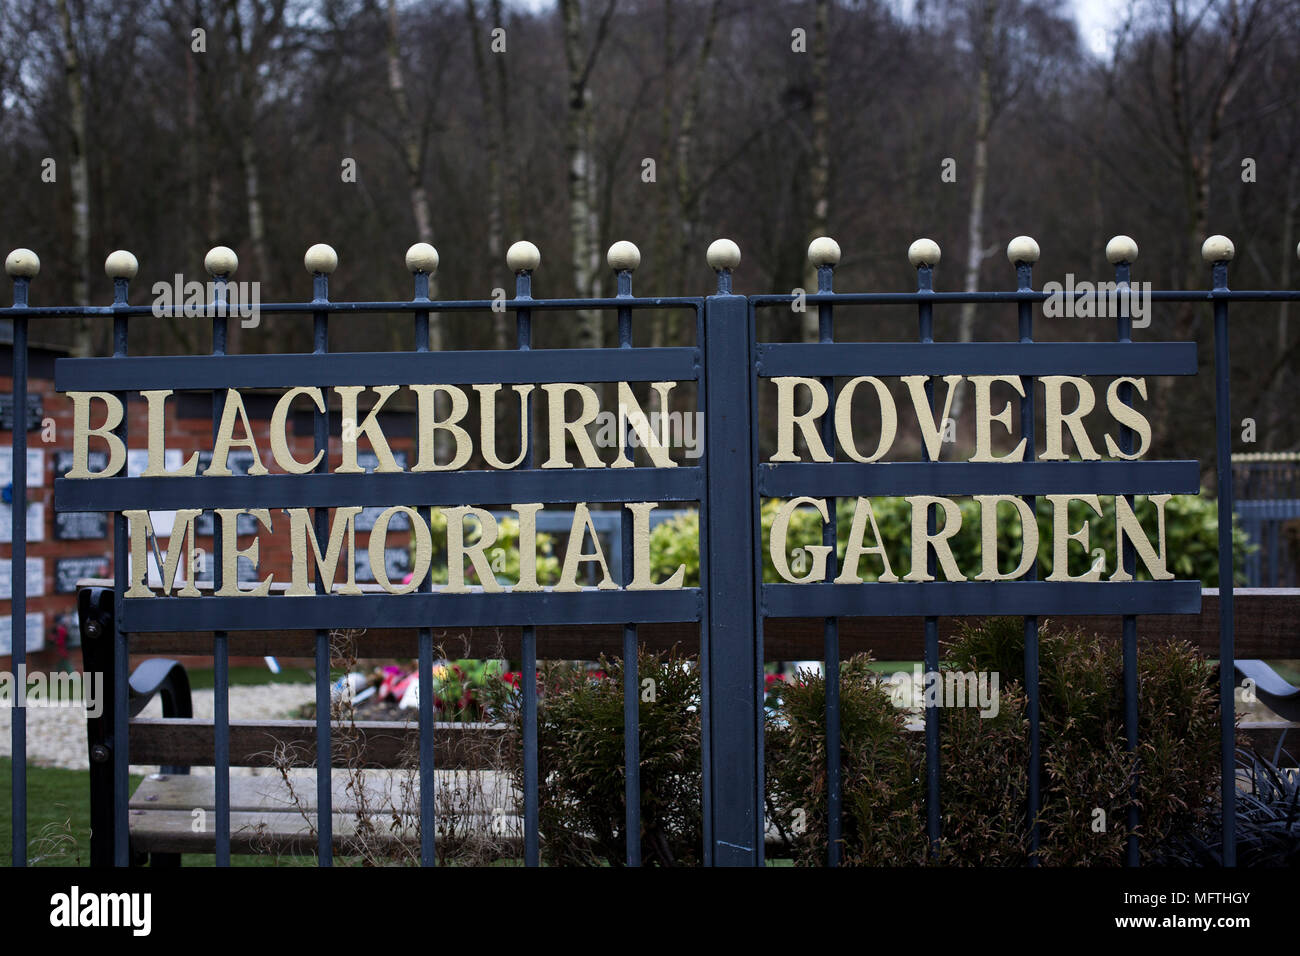 Le Jardin du souvenir, Blackburn Rovers Blackburn Rovers avant photo Ville de Shrewsbury a joué dans une ligue pari ciel un appareil à Ewood Park. Les deux équipe ont été dans le top trois dans la division au début de la partie. Blackburn a gagné le match par 3 buts à 1, suivi par une foule de 13 579. Banque D'Images